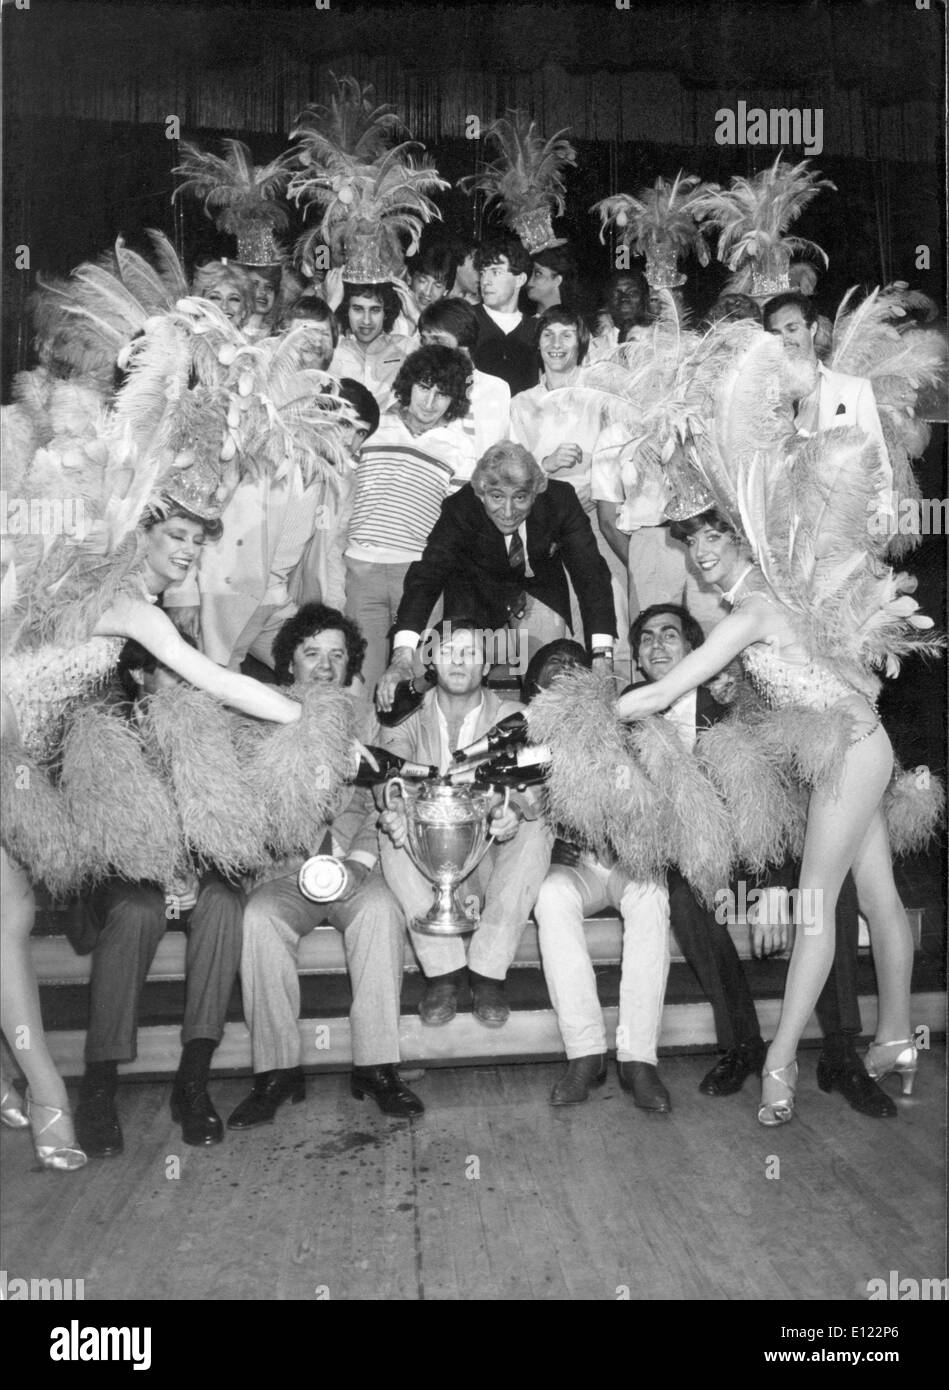 19. Mai 1982 - Paris, Frankreich - weltberühmte Moulin Rouge Kabarett, von Toulouse-Lautrec verewigt ist in Montmartre, der einzige Ort in Paris gelegen finden Sie das wahre können can. Das Moulin Rouge ist ein Touristenziel bietet musikalische und tänzerische Unterhaltung für Erwachsene Besucher aus der ganzen Welt. Viele internationale Stars auf der Bühne im Moulin Rouge durchgeführt haben: Elton John, Frank Sinatra, Ella Fitzgerald, Liza Minelli. Im Bild: Moulin Rouge Ensemble von 1982. Stockfoto